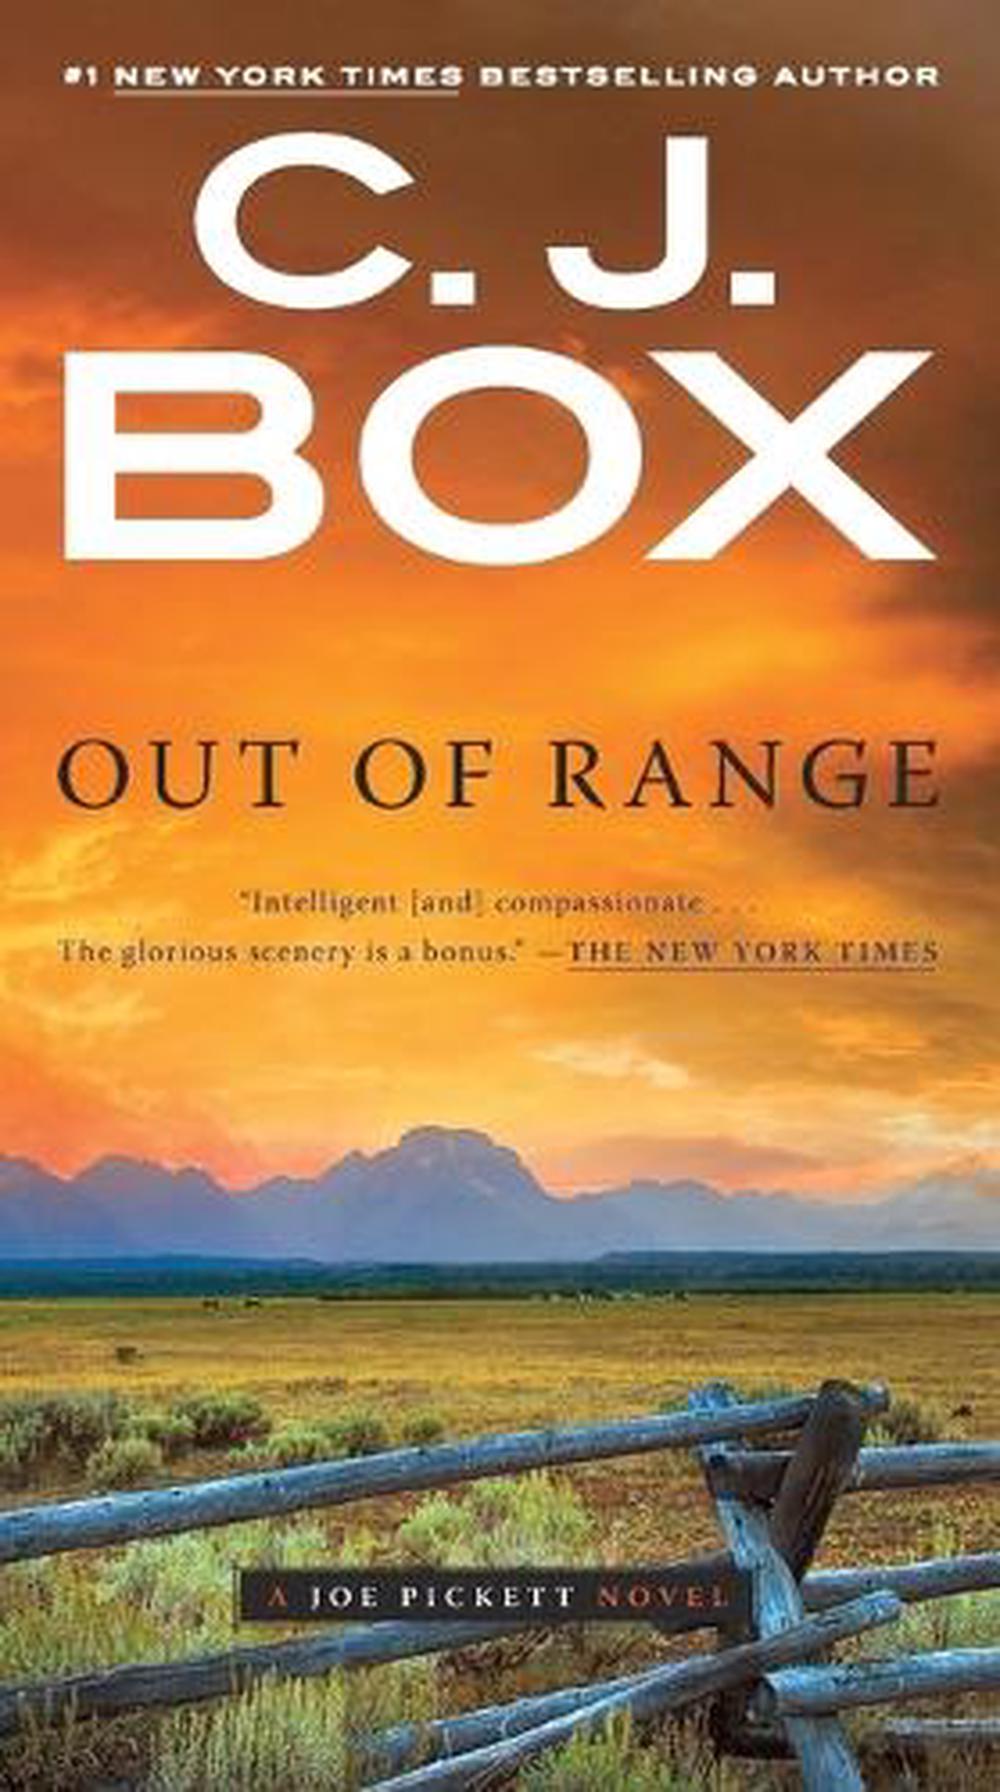 out of range by cj box